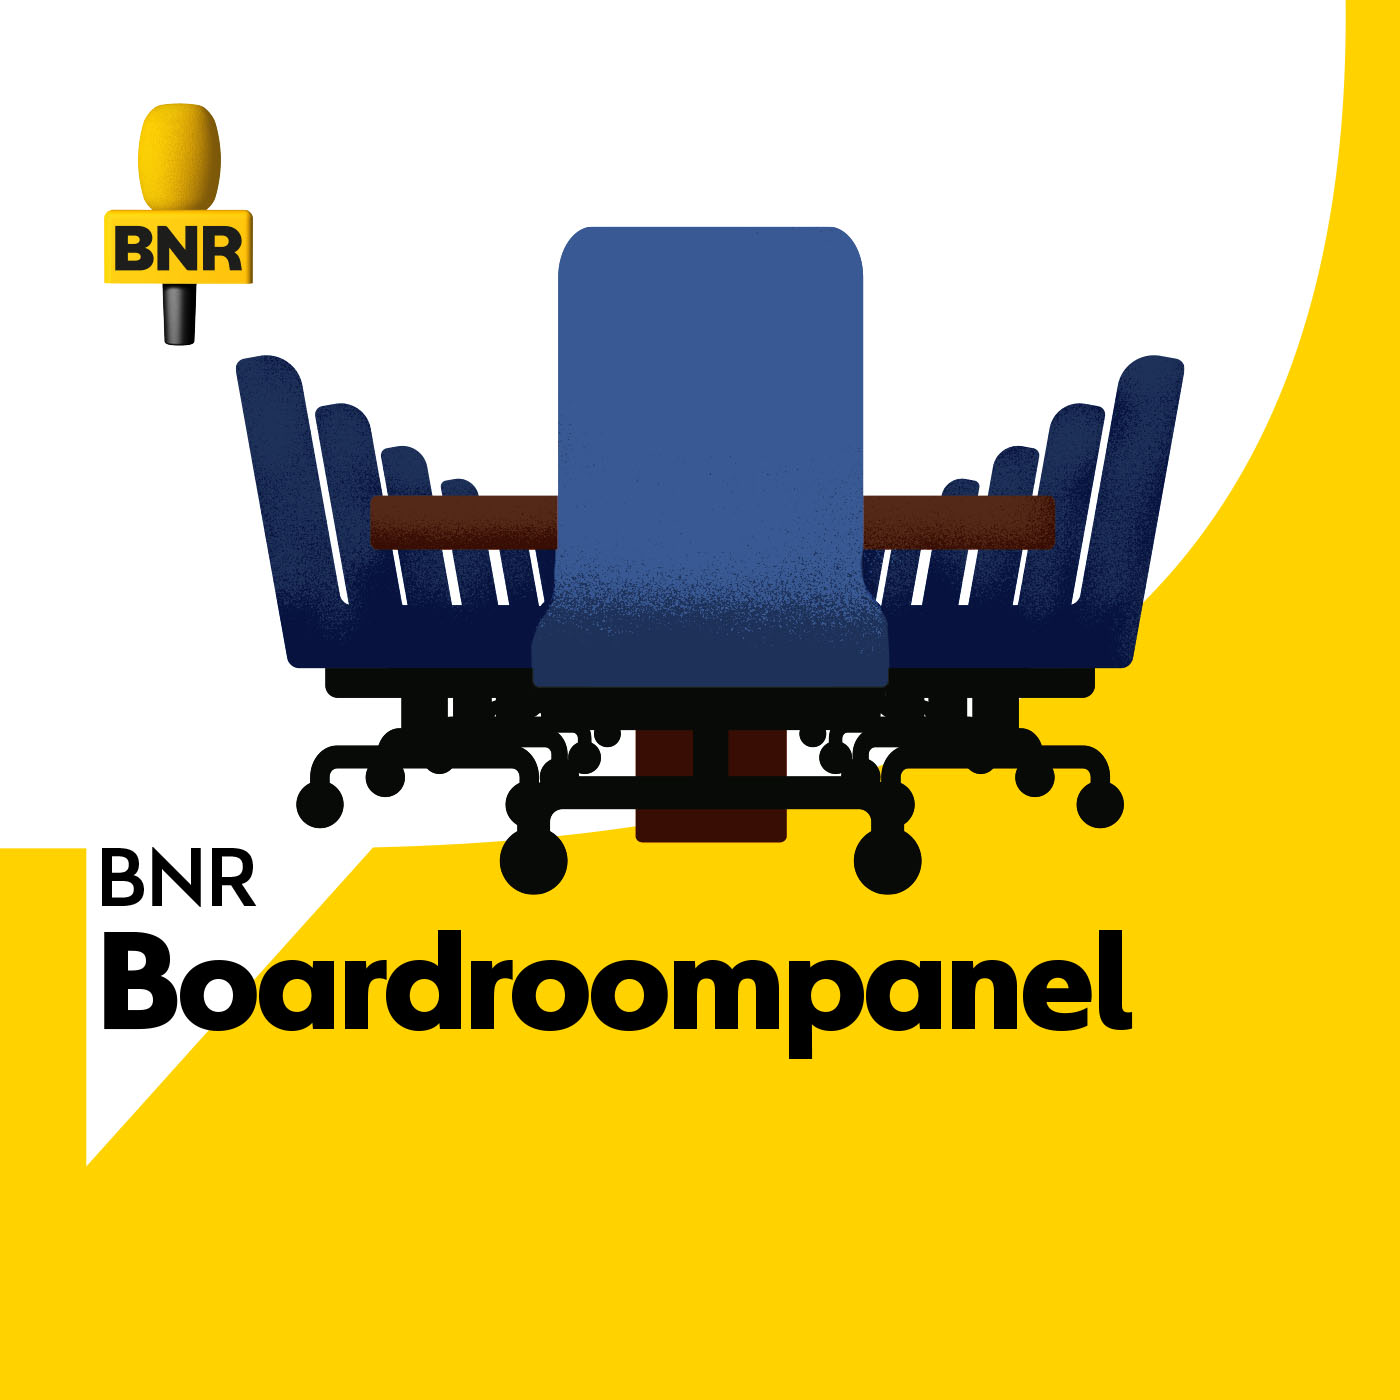 BNR Boardroompanel over de strijd van Damen Shipyard tegen de Nederlandse overheid